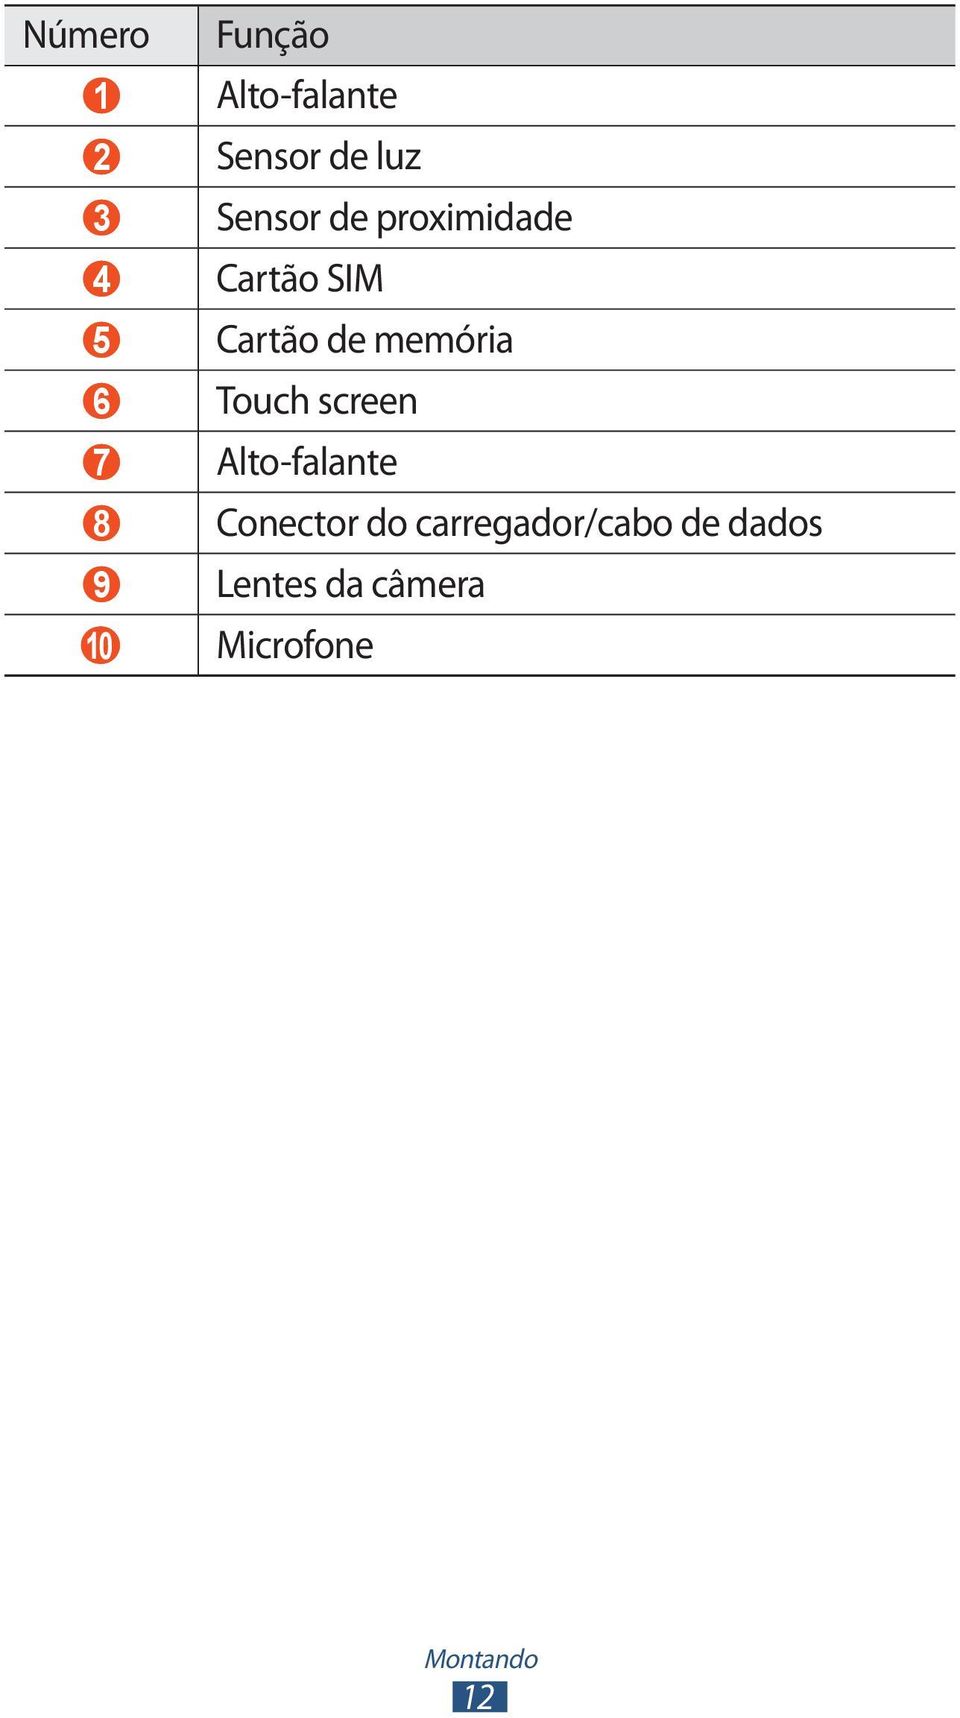 Touch screen 7 Alto-falante 8 Conector do